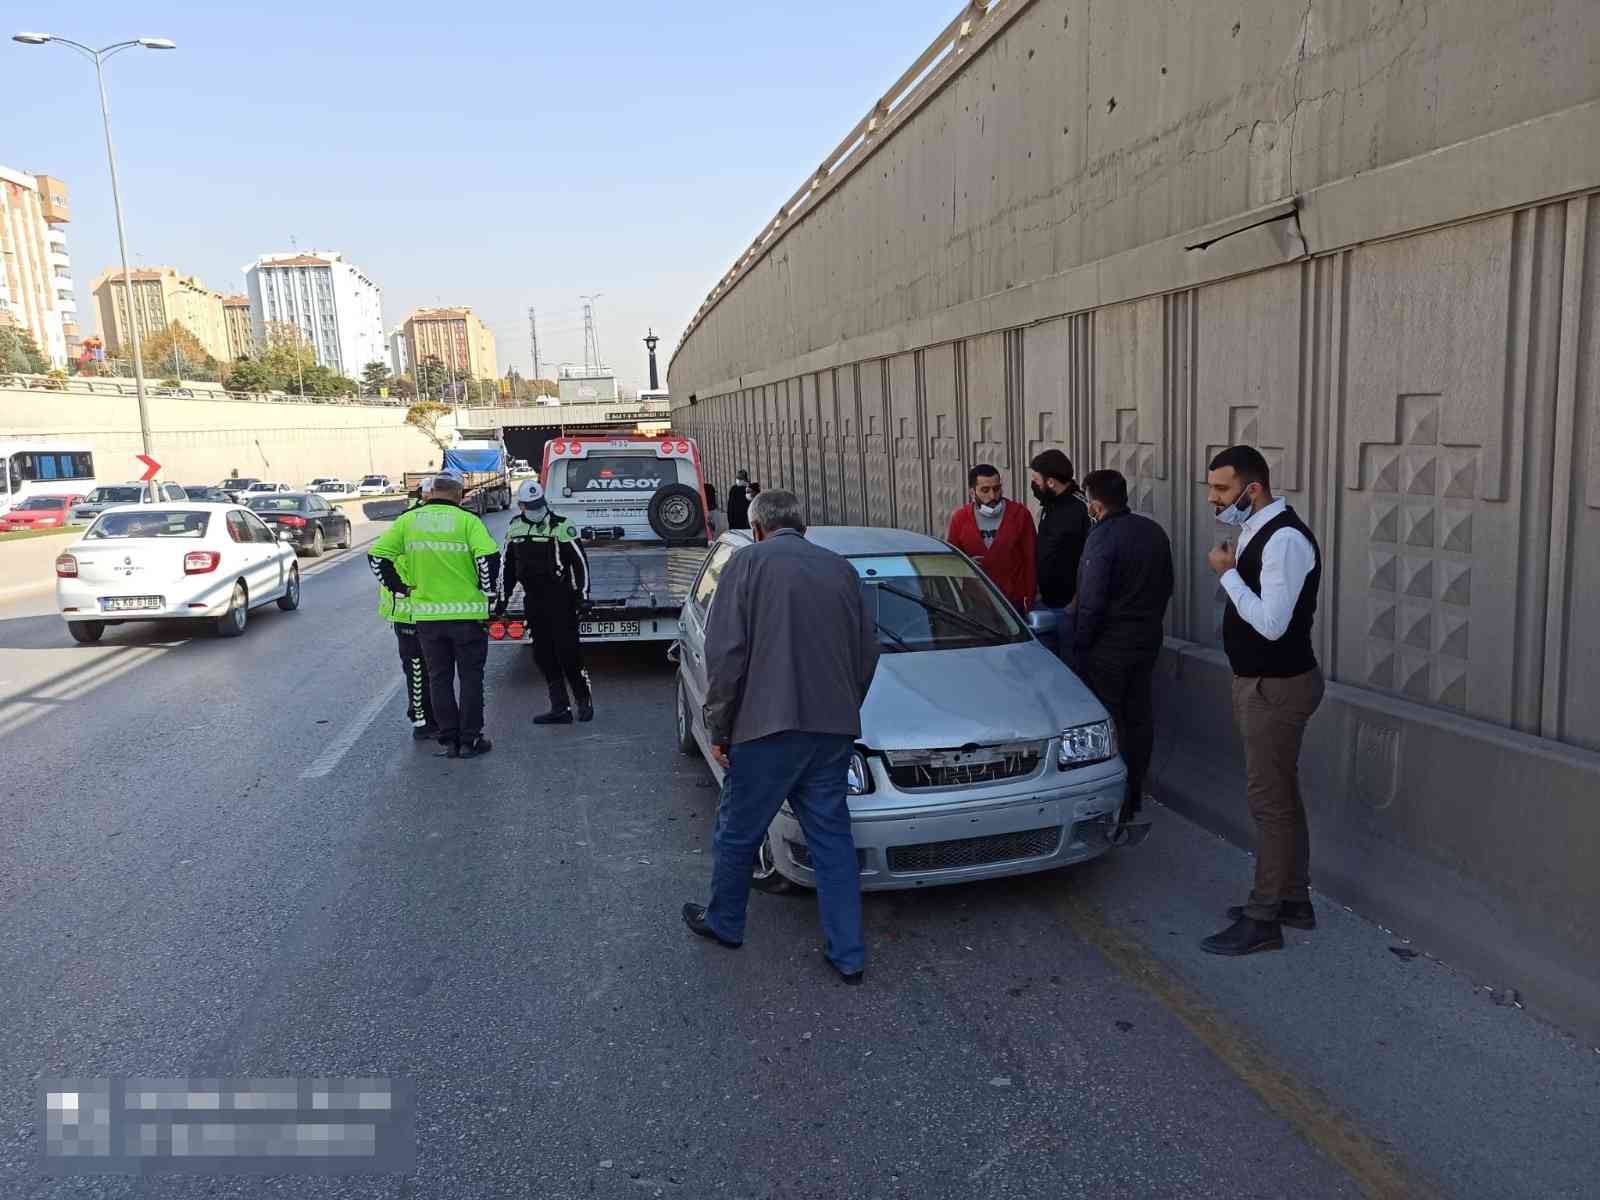 Başkent’te zincirleme kaza: 4 yaralı #ankara